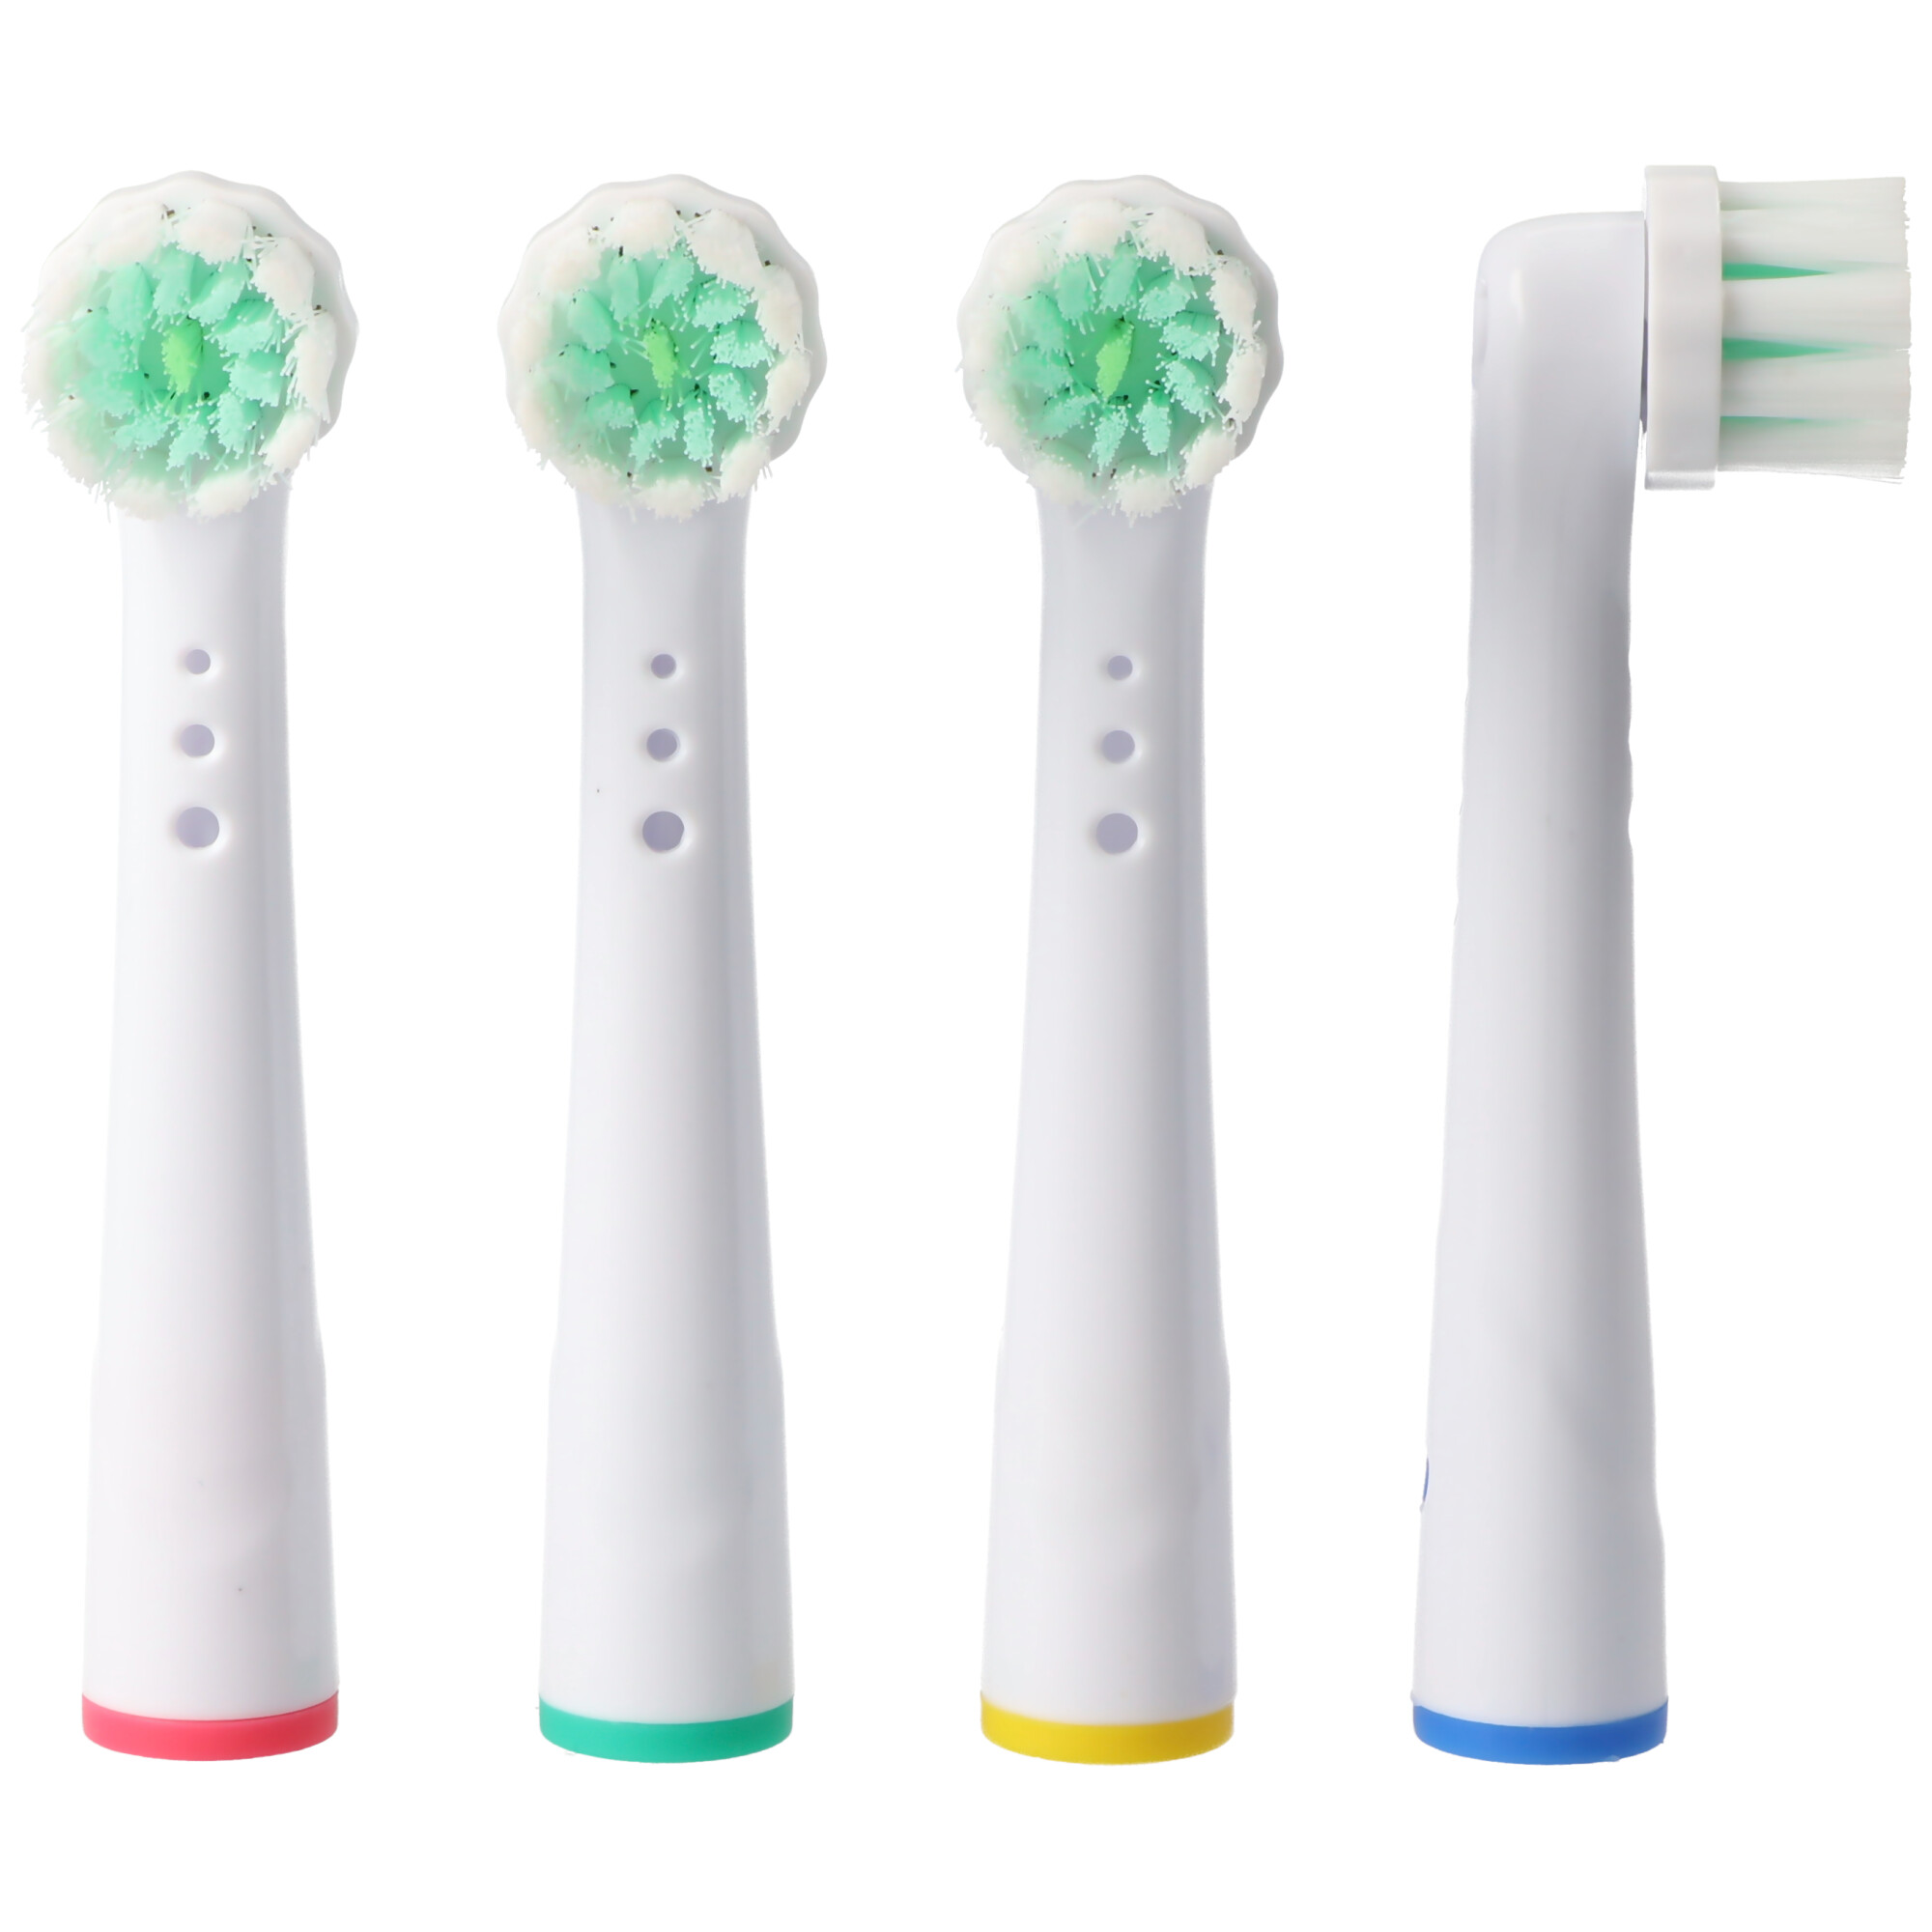 4 Stück 3D Whitening Ersatz-Zahnbürstenkopf für elektrische Zahnbürsten von Oral-B, passend z.B. für Oral-B D10, D12, D16, D12 und viele andere Modelle von Oral-B